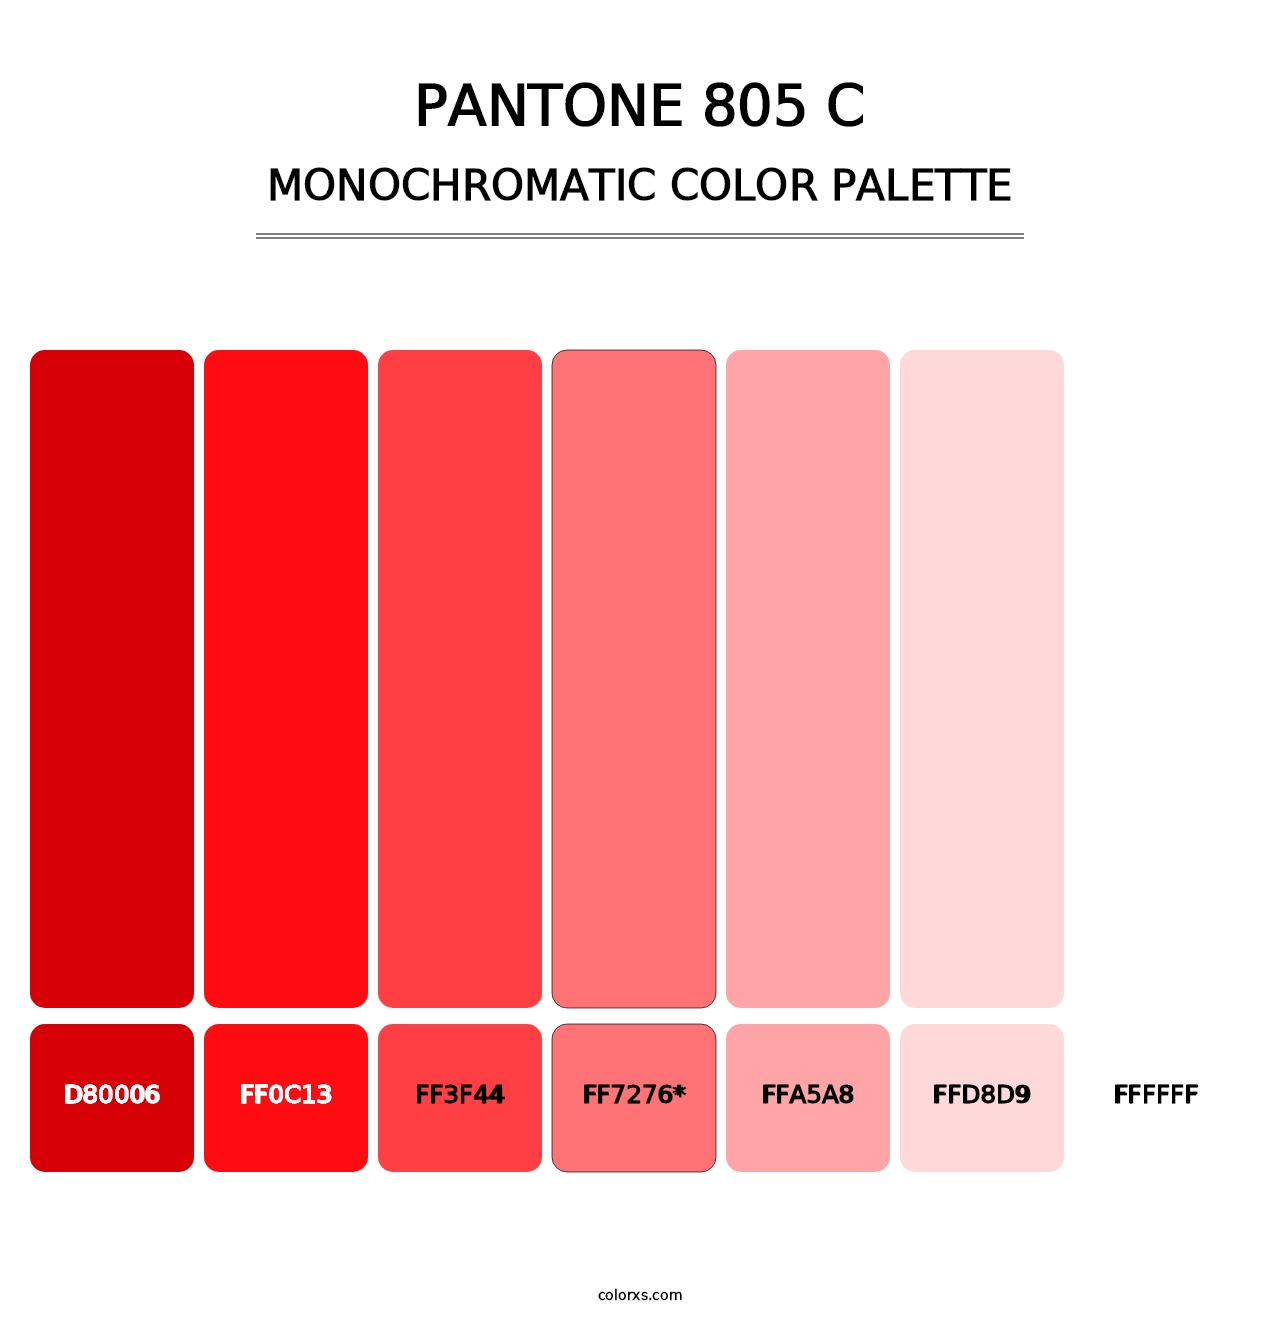 PANTONE 805 C - Monochromatic Color Palette